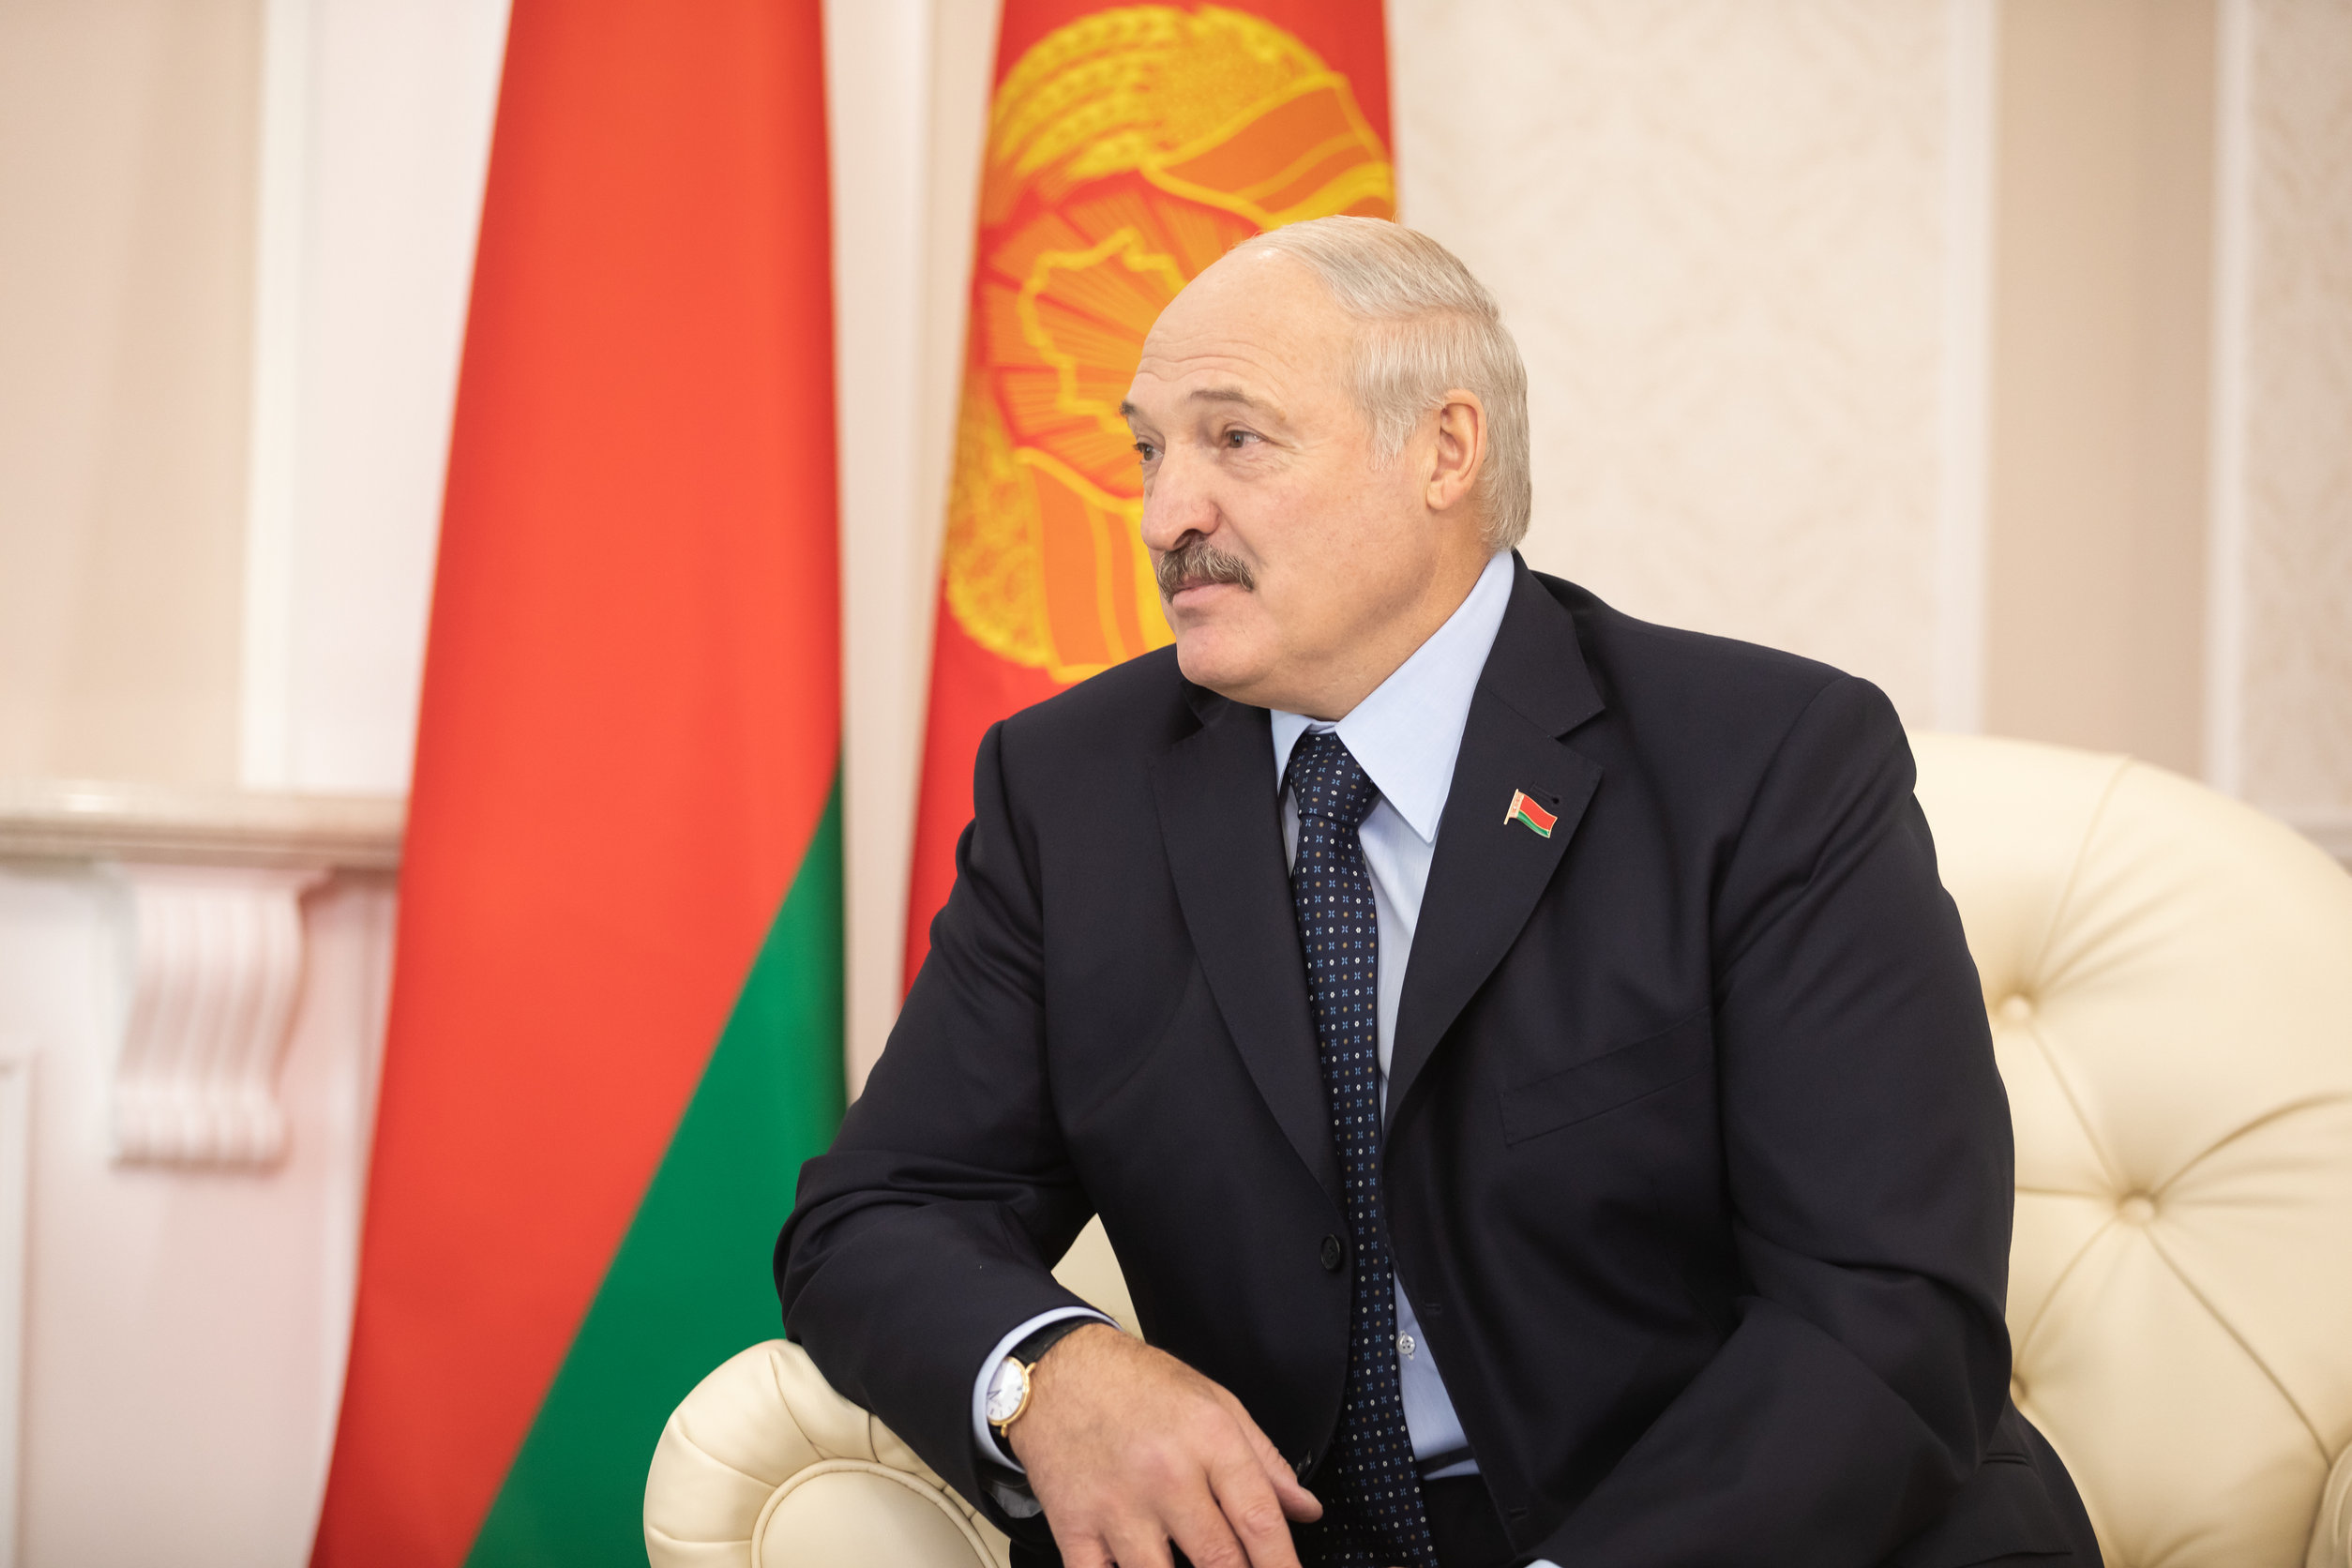 Nuo 1994 m. prezidento pareigas Baltarusijoje einantis Aliaksandras Lukašenka.123rf nuotr.